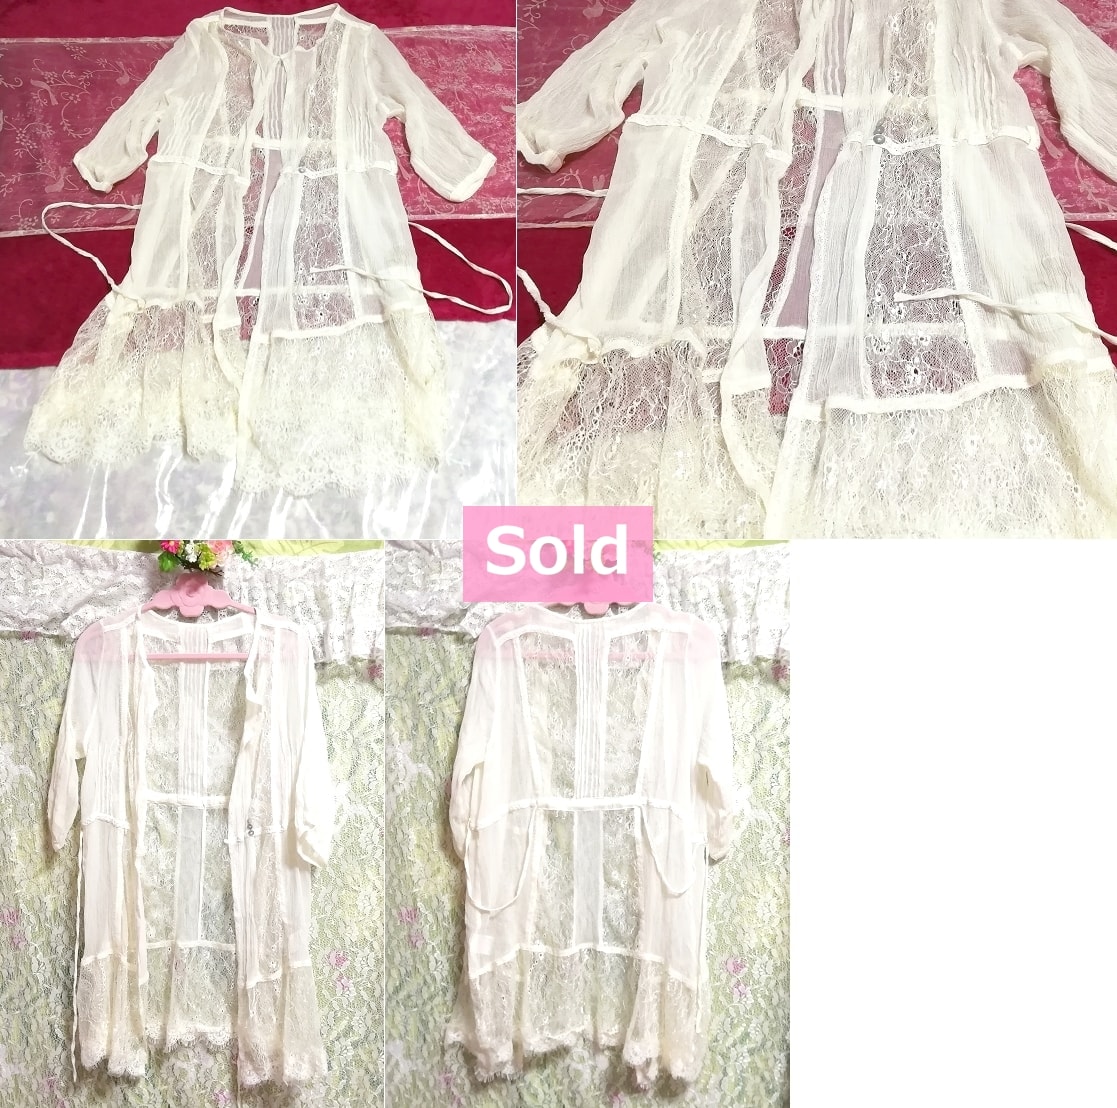 Abrigo / cárdigan de encaje blanco floral de seda 100% seda Abrigo / cárdigan de encaje blanco floral 100% seda